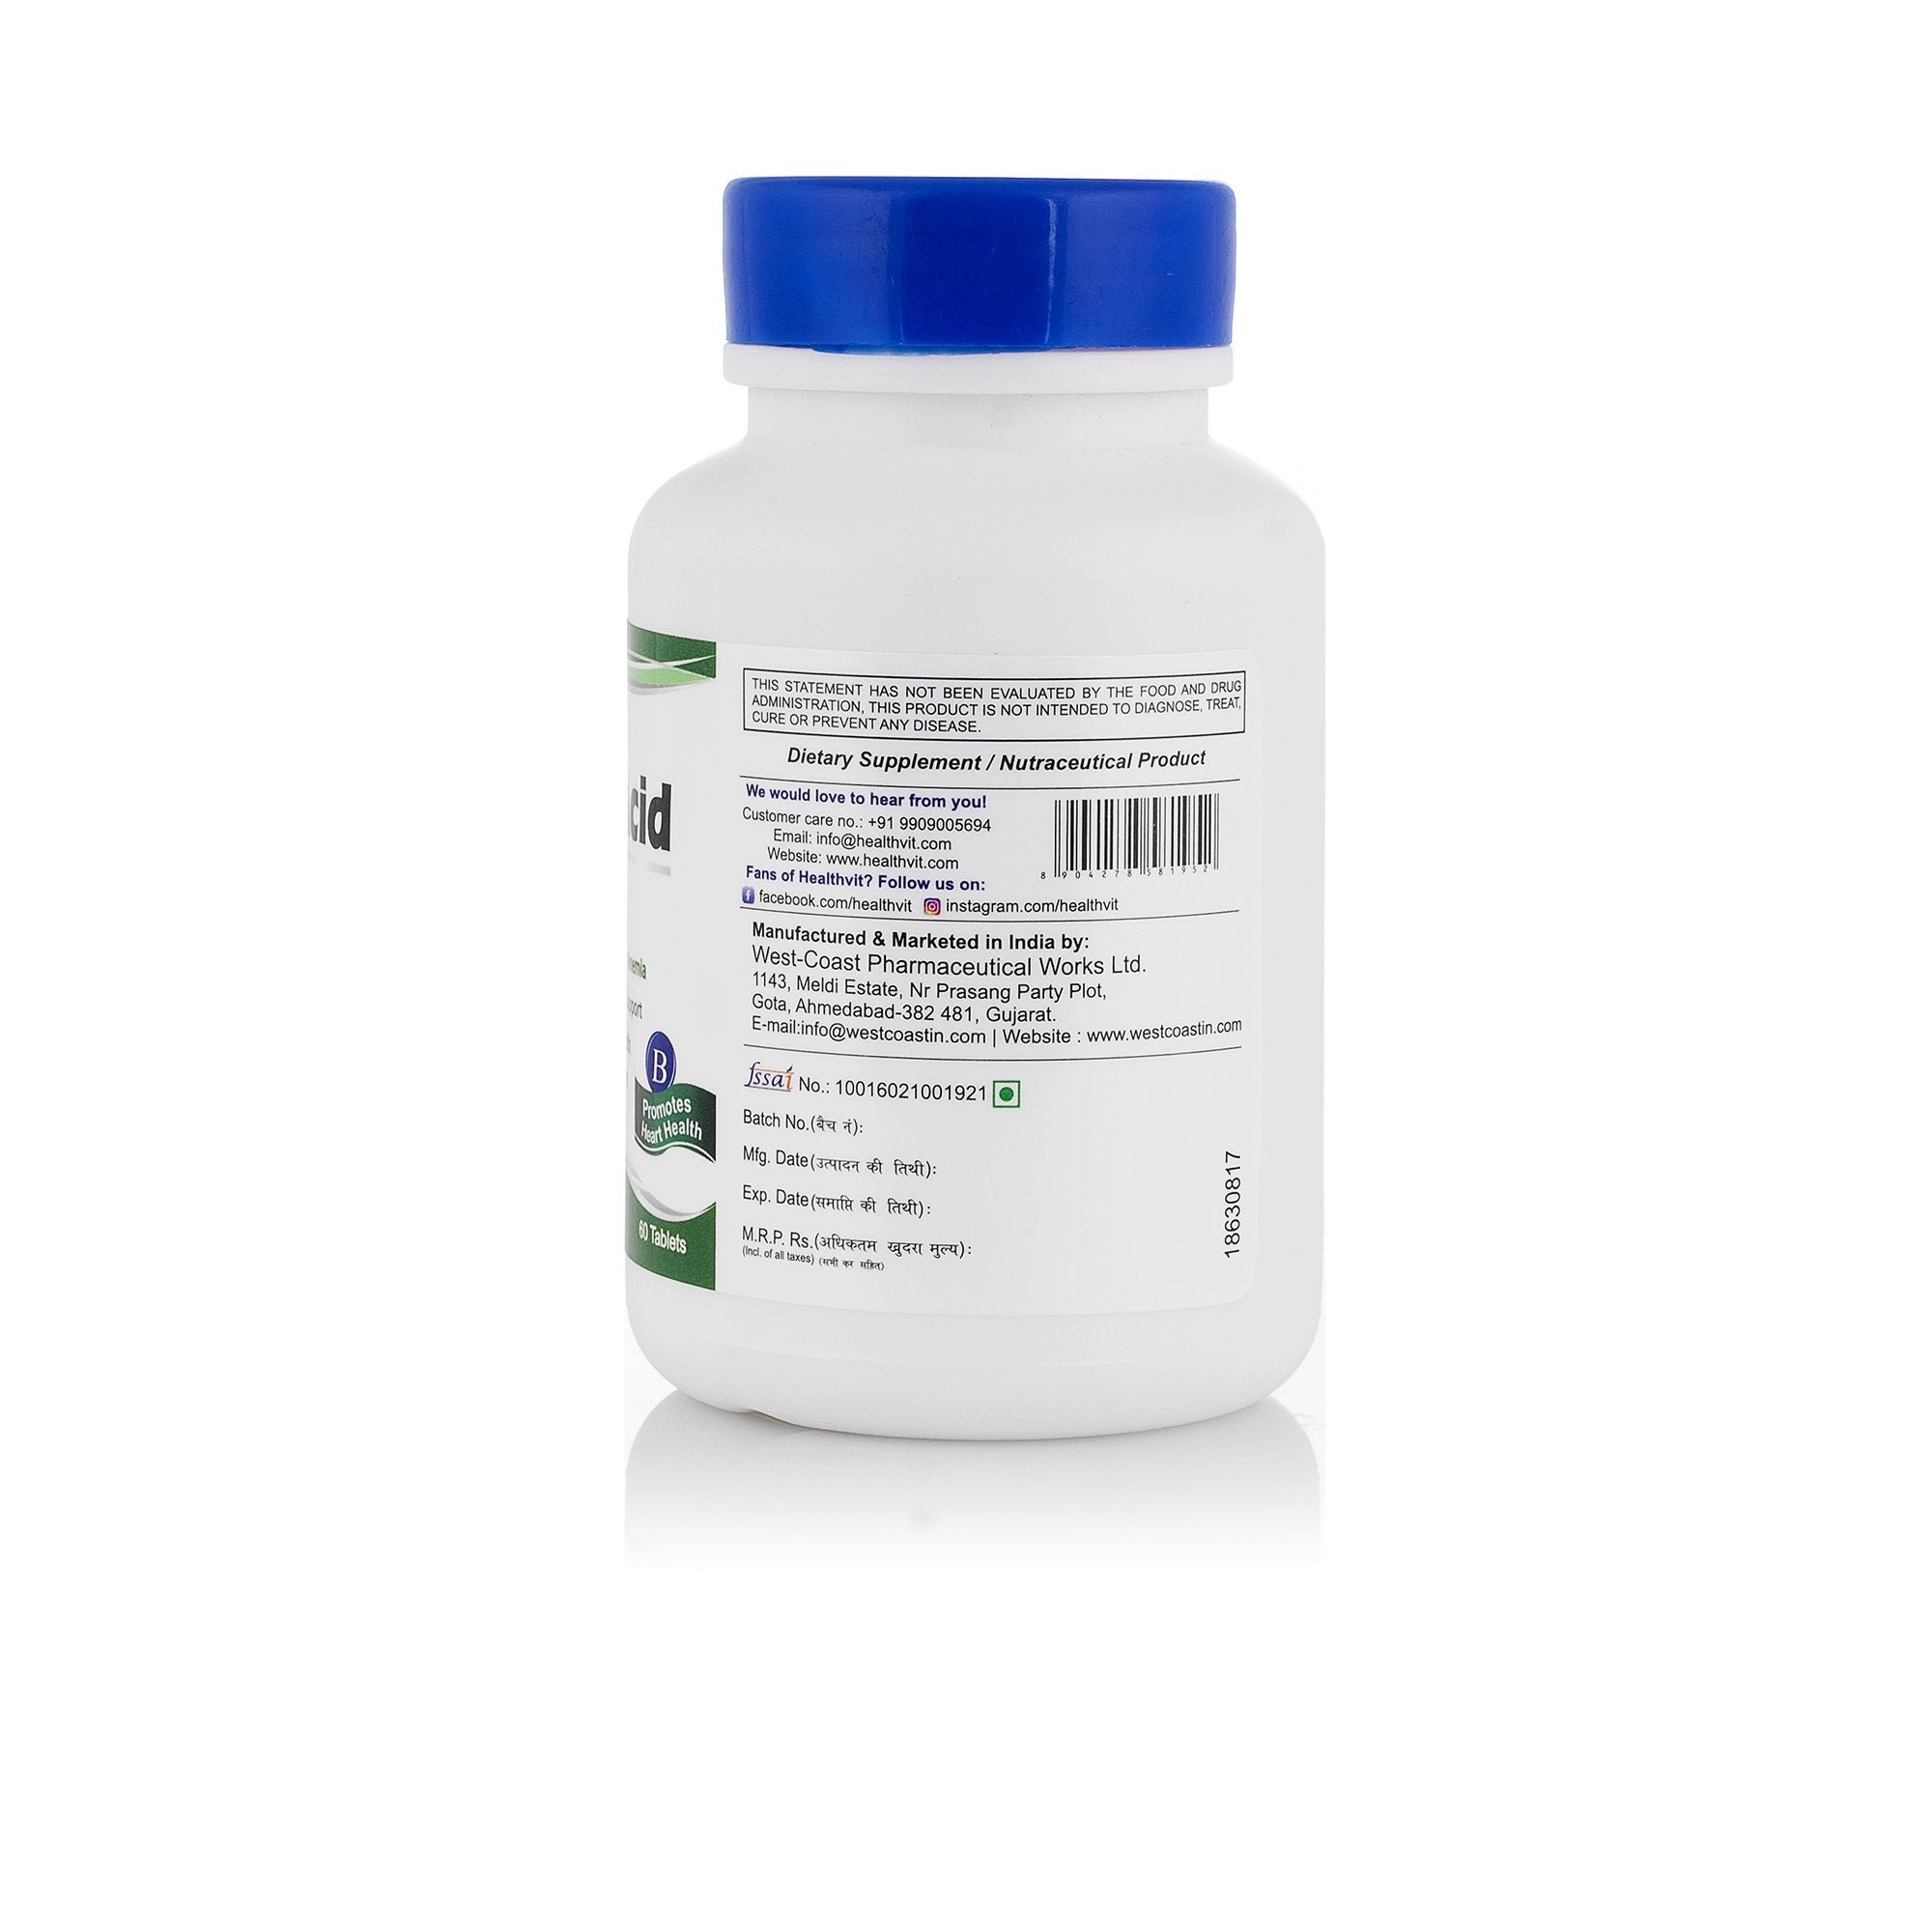 Healthvit Folic Acid 2 mg - 60 Tablets